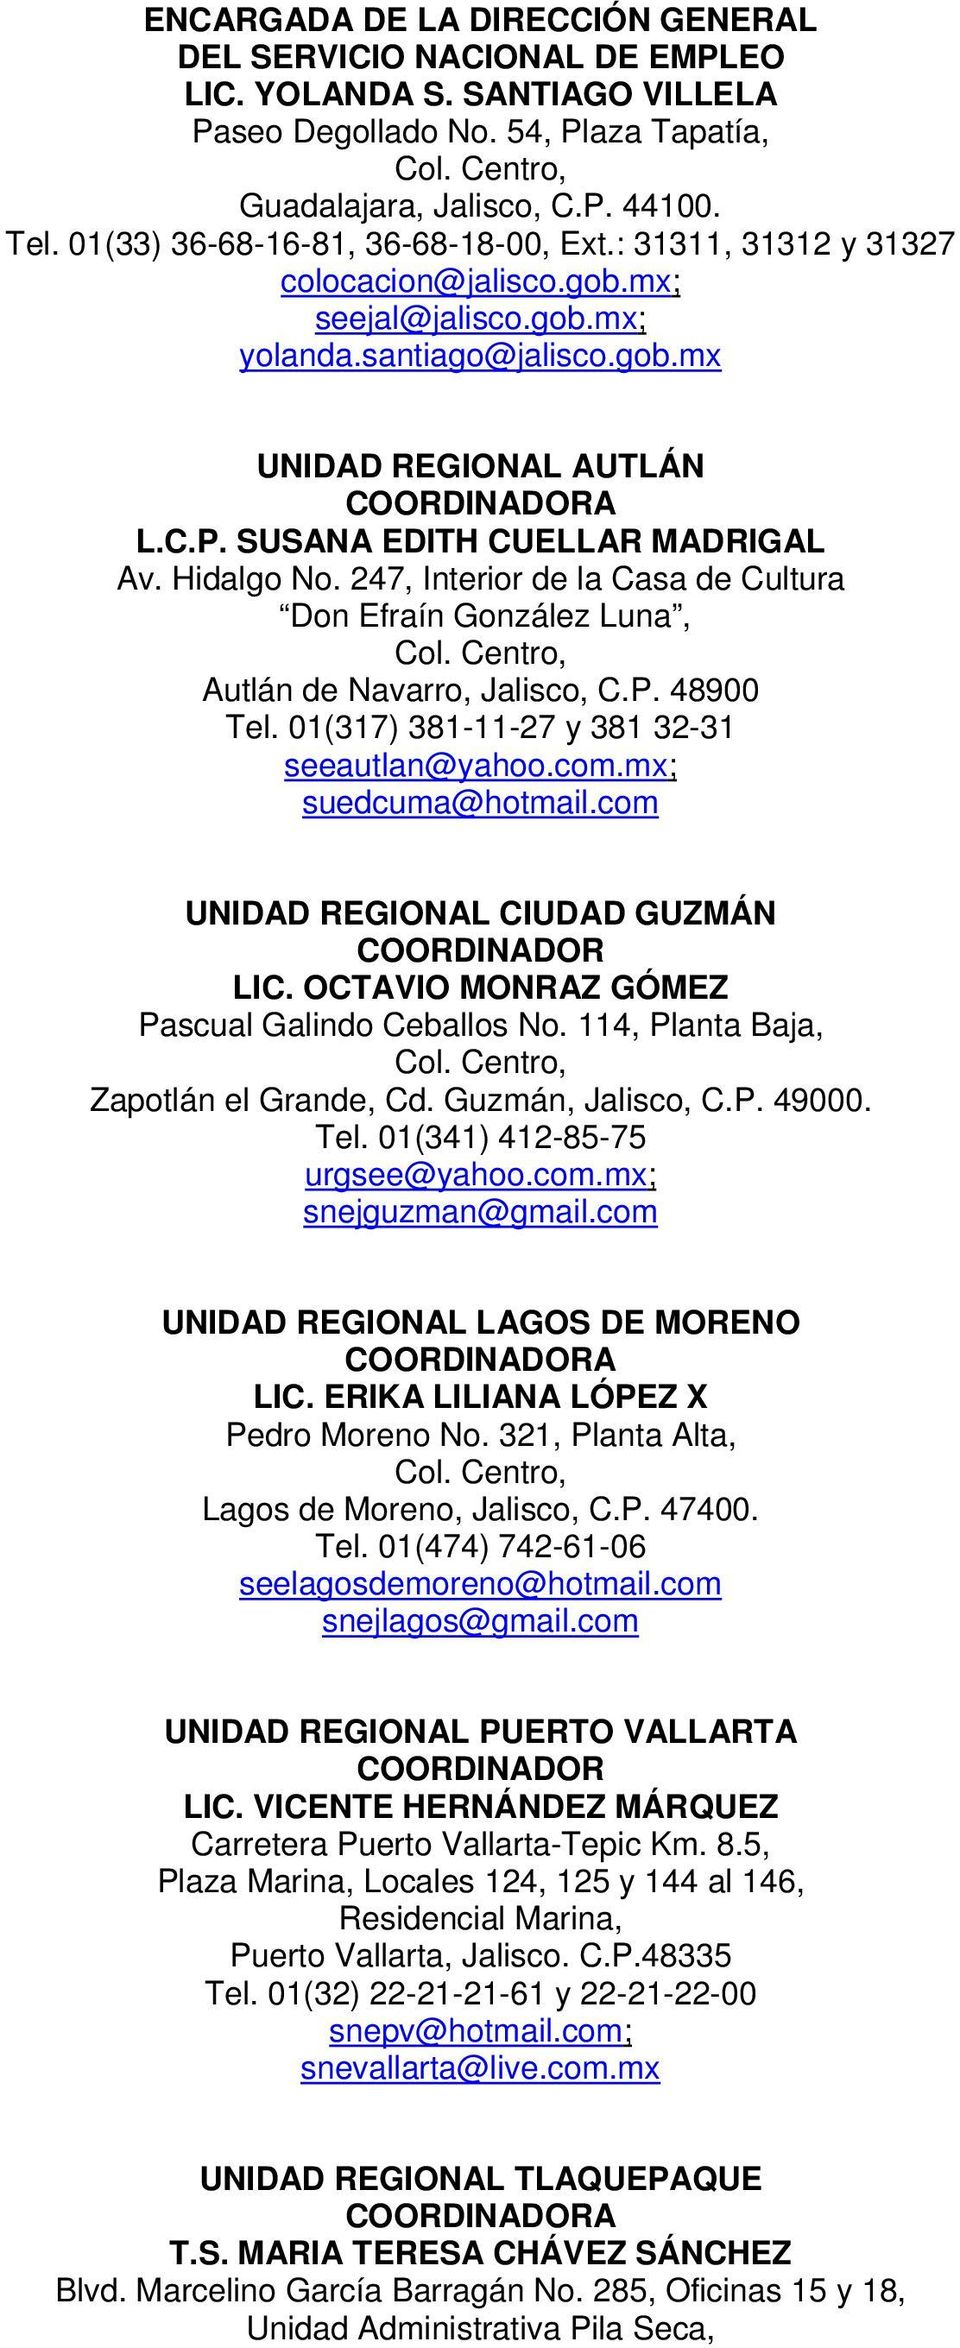 SUSANA EDITH CUELLAR MADRIGAL Av. Hidalgo No. 247, Interior de la Casa de Cultura Don Efraín González Luna, Autlán de Navarro, Jalisco, C.P. 48900 Tel. 01(317) 381-11-27 y 381 32-31 seeautlan@yahoo.